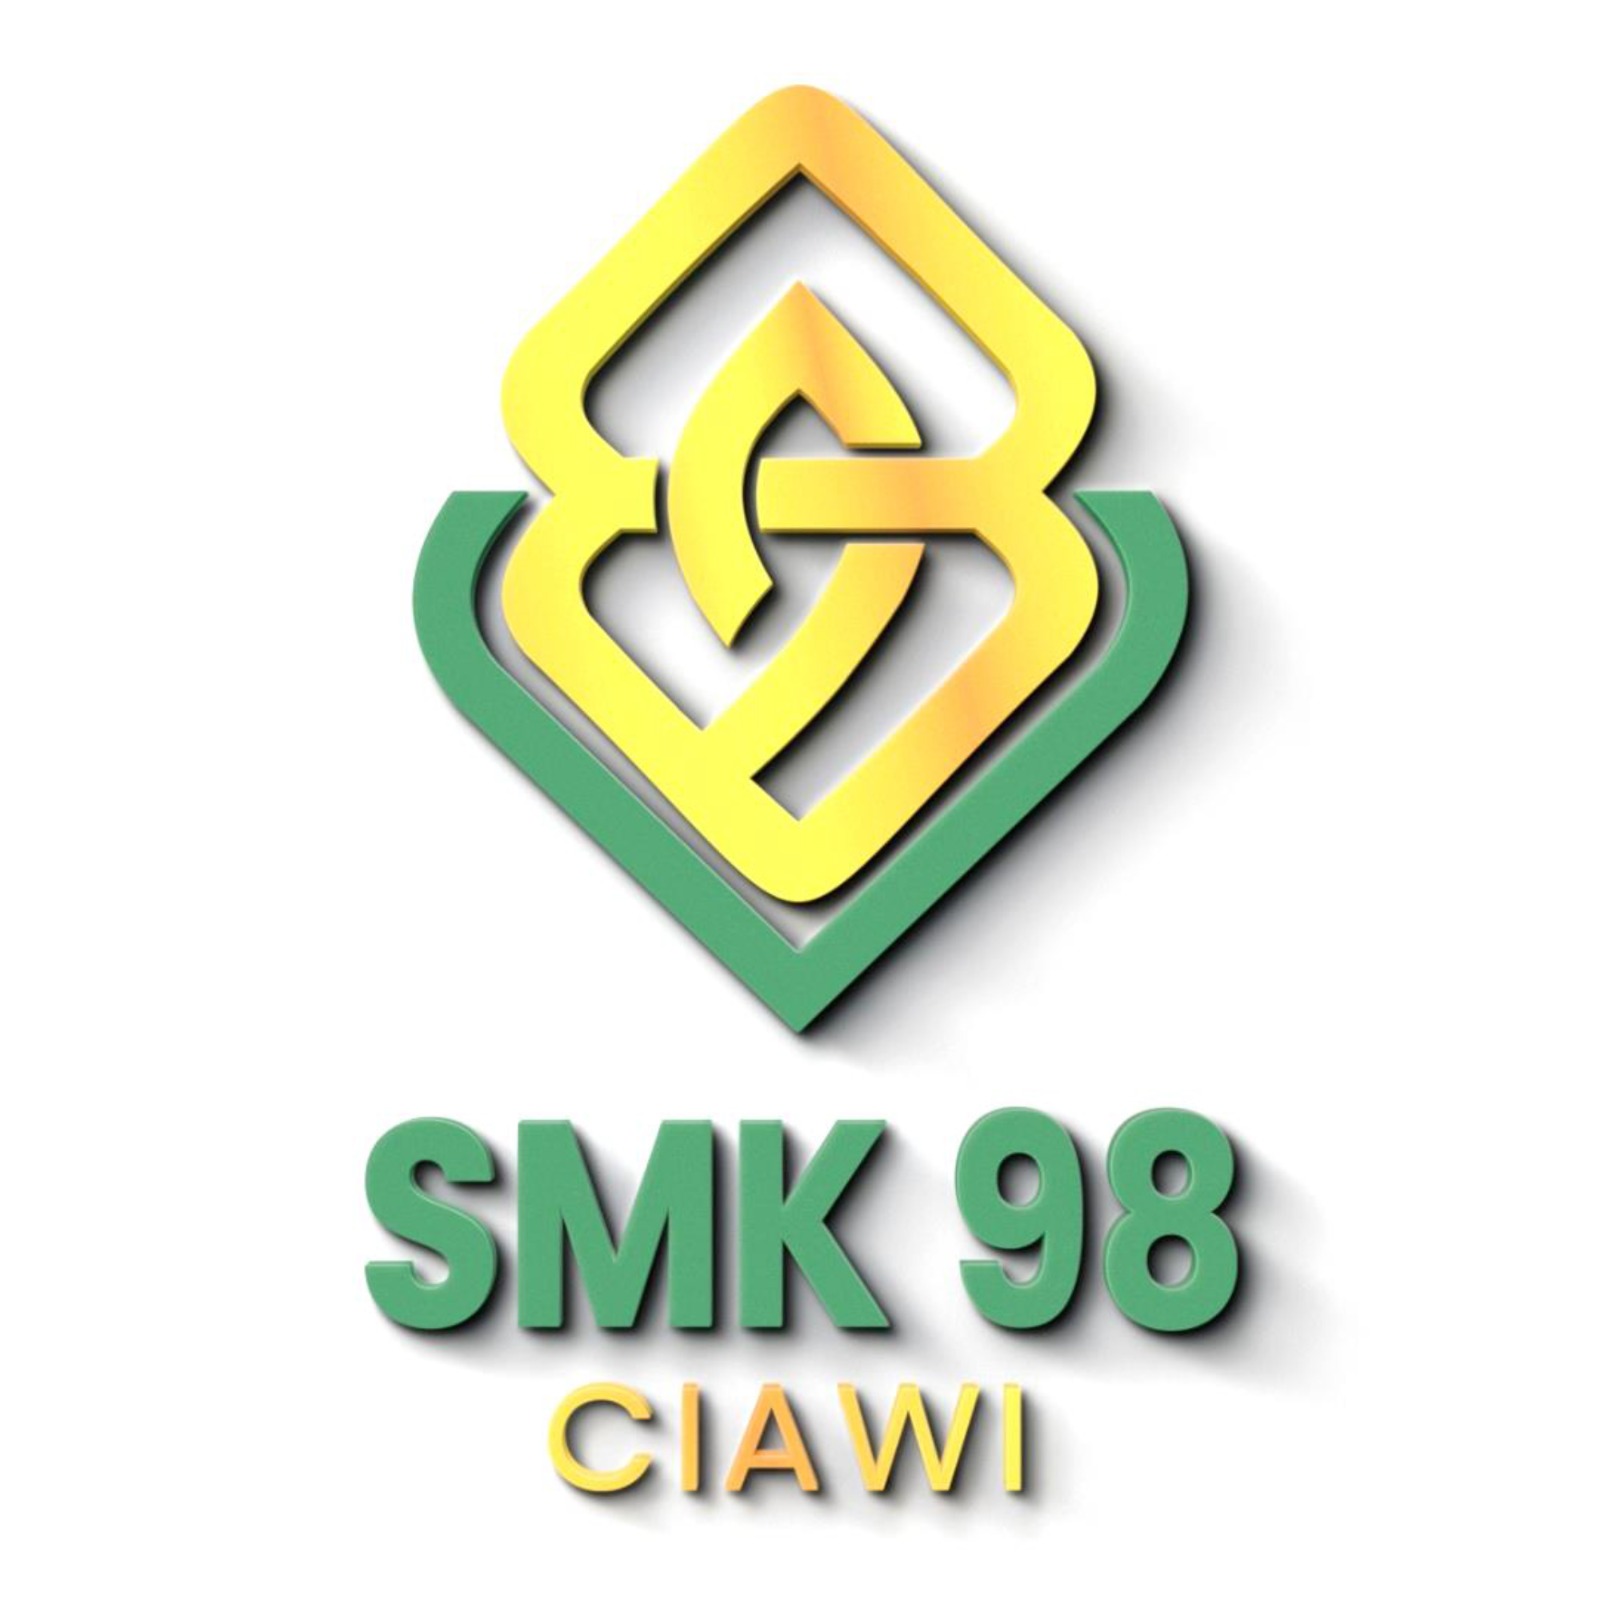 SMK 98 CIAWI